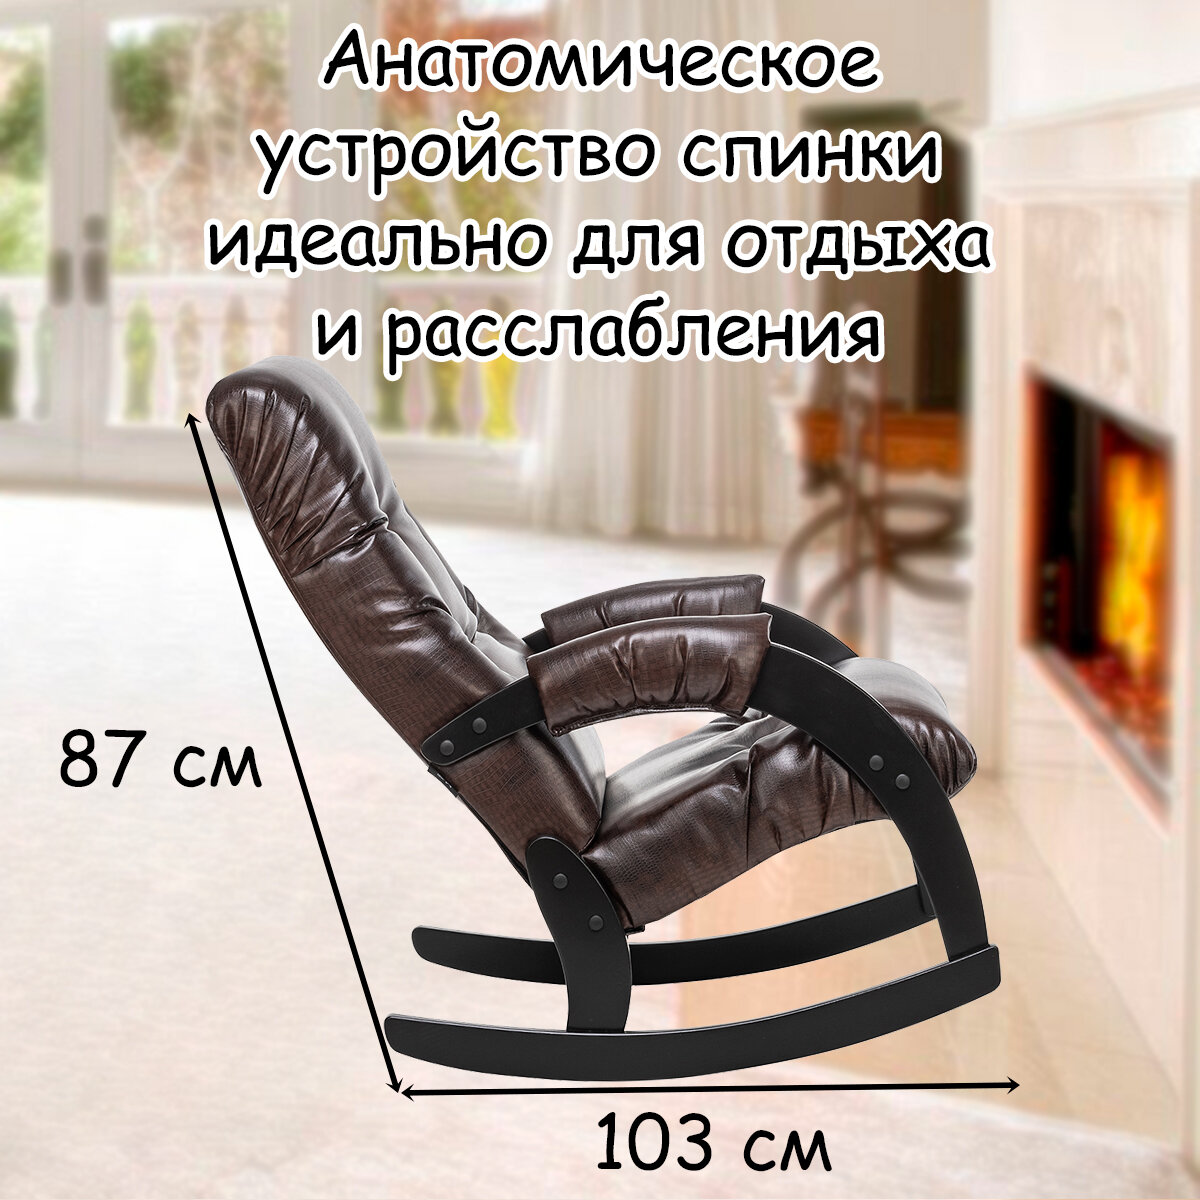 Кресло-качалка для взрослых 54х95х100 см, модель 67, экокожа, цвет: Antik crocodile (коричневый), каркас: Venge (черный) - фотография № 4